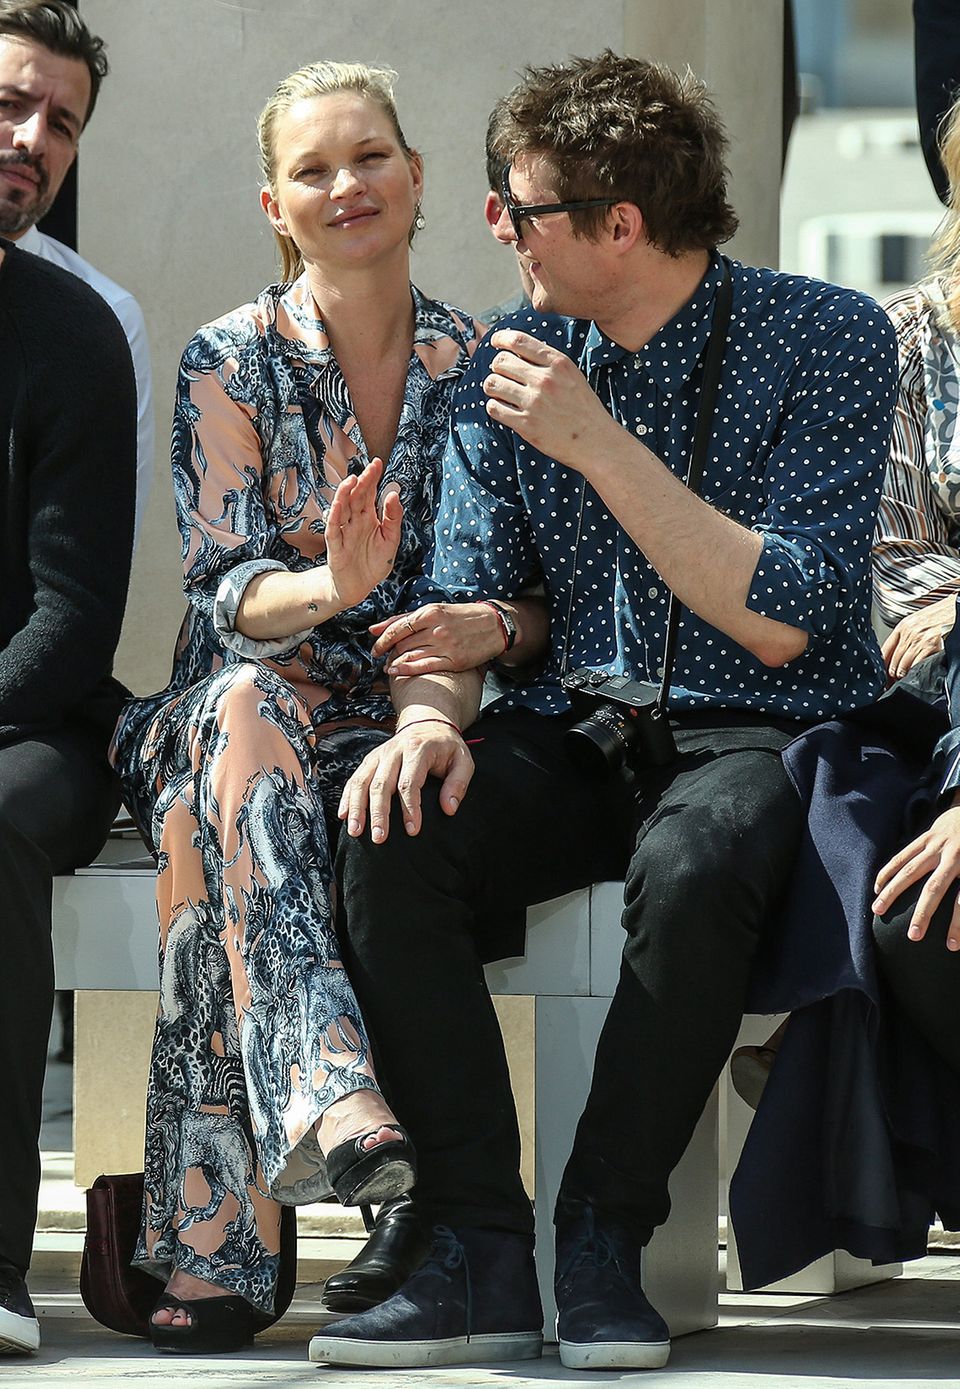 Schon am Tag zuvor zeigten Kate Moss und Nikolai von Bismarck sich ganz kuschelig in der Frontrow der Fashion-Show von Louis Vuitton.